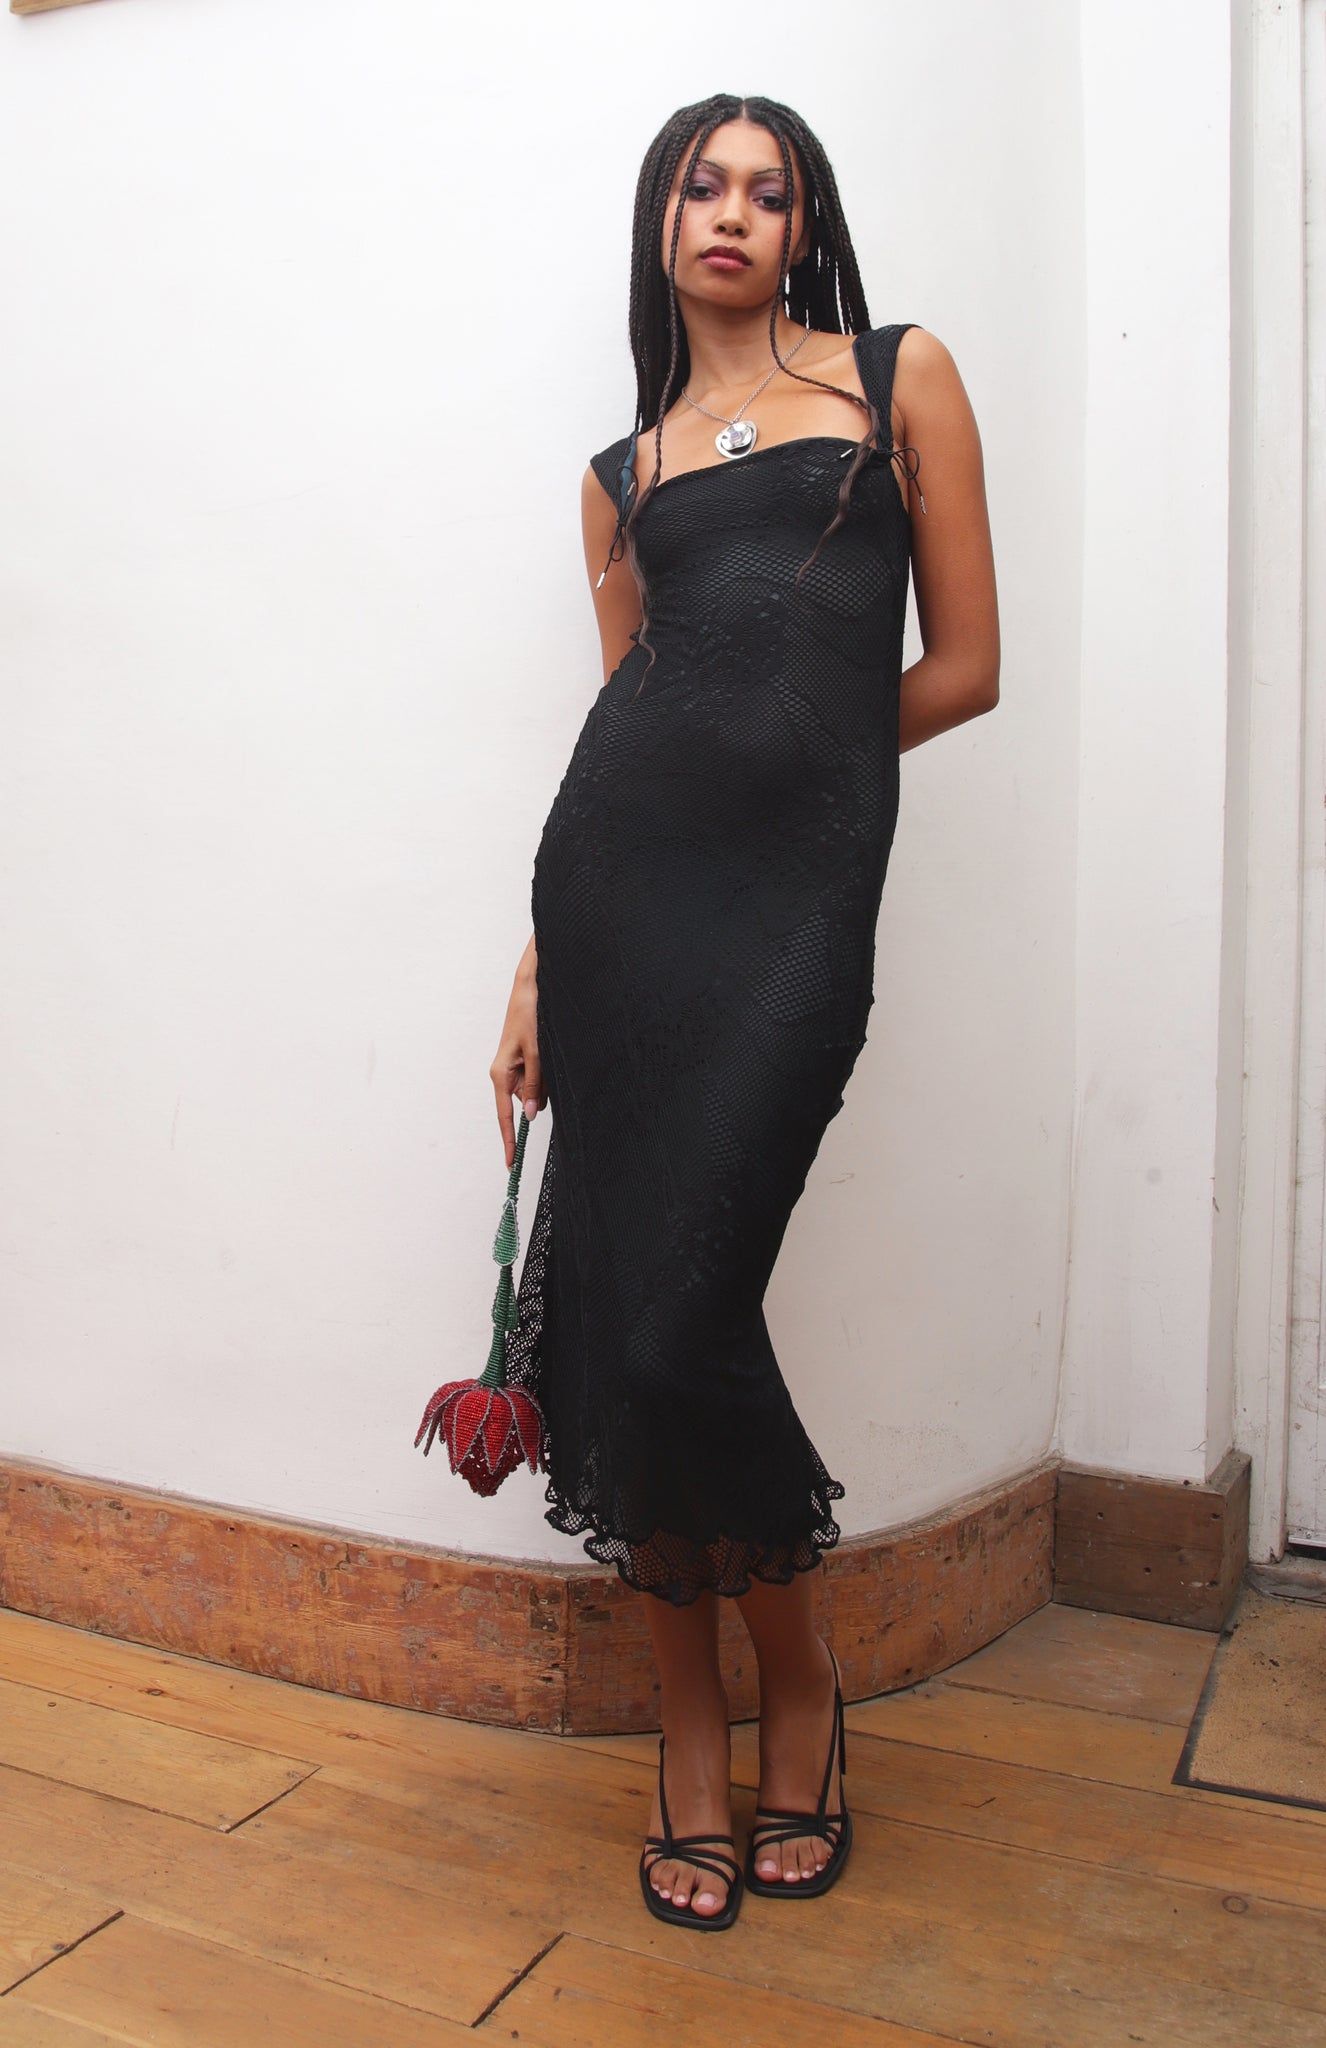 Black Lace Dress Outfit Ideas